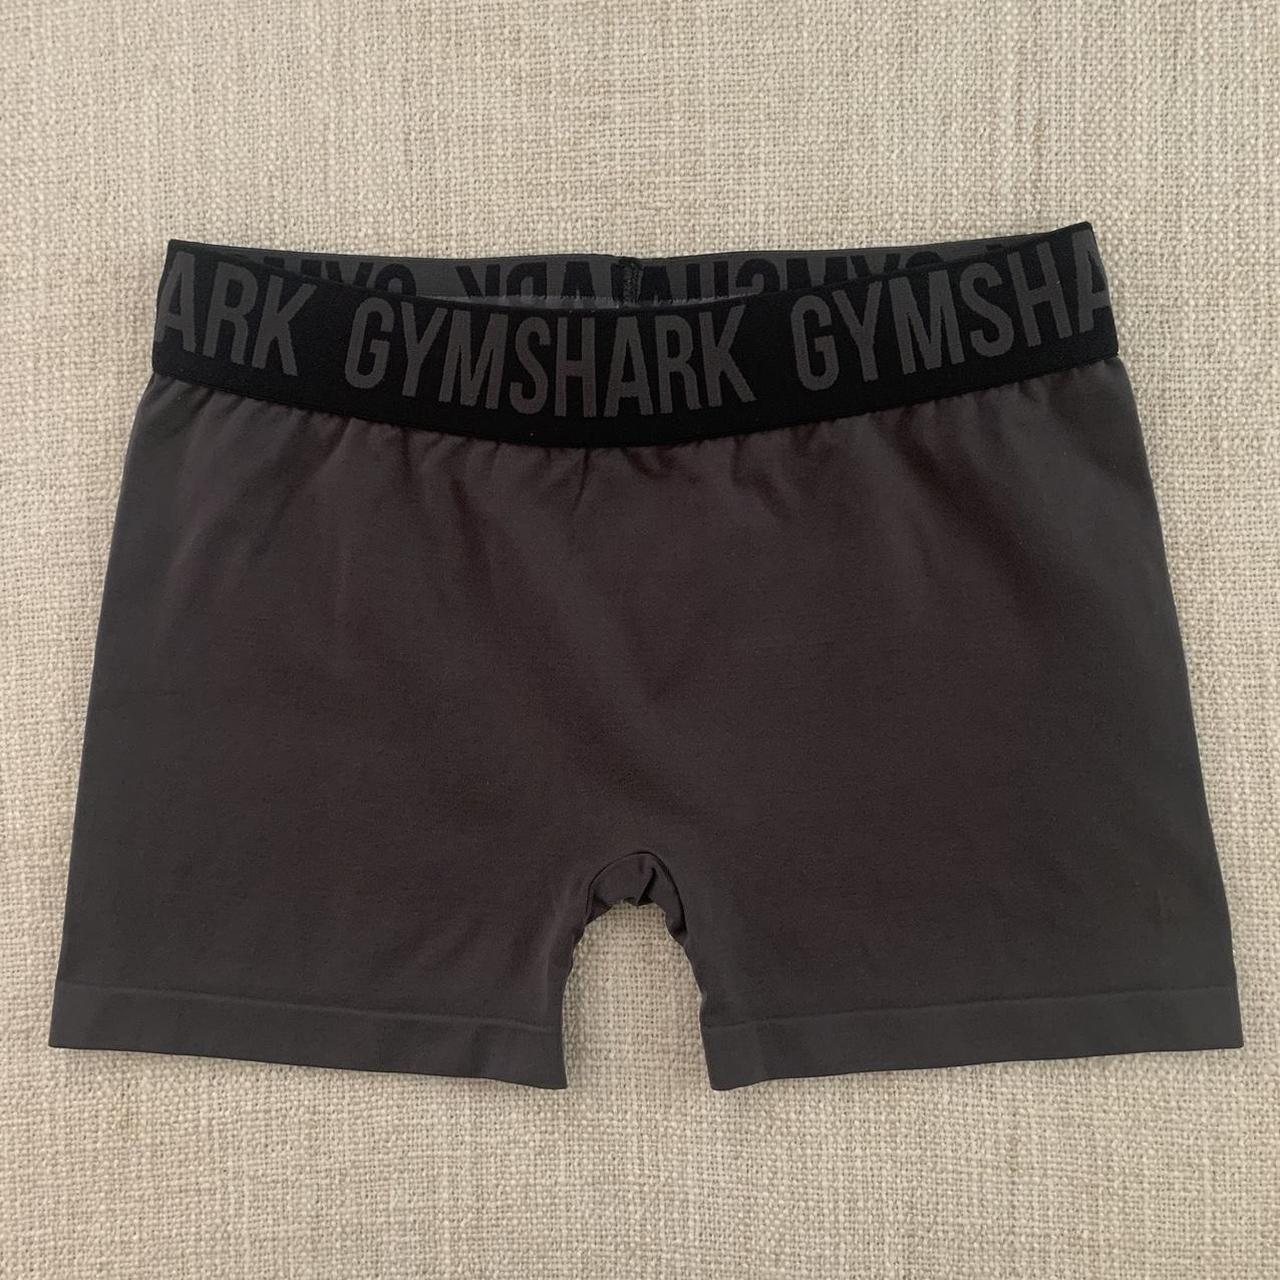 Gymshark Gymshark Flex shorts Color: Cosmic Gray ... - Depop